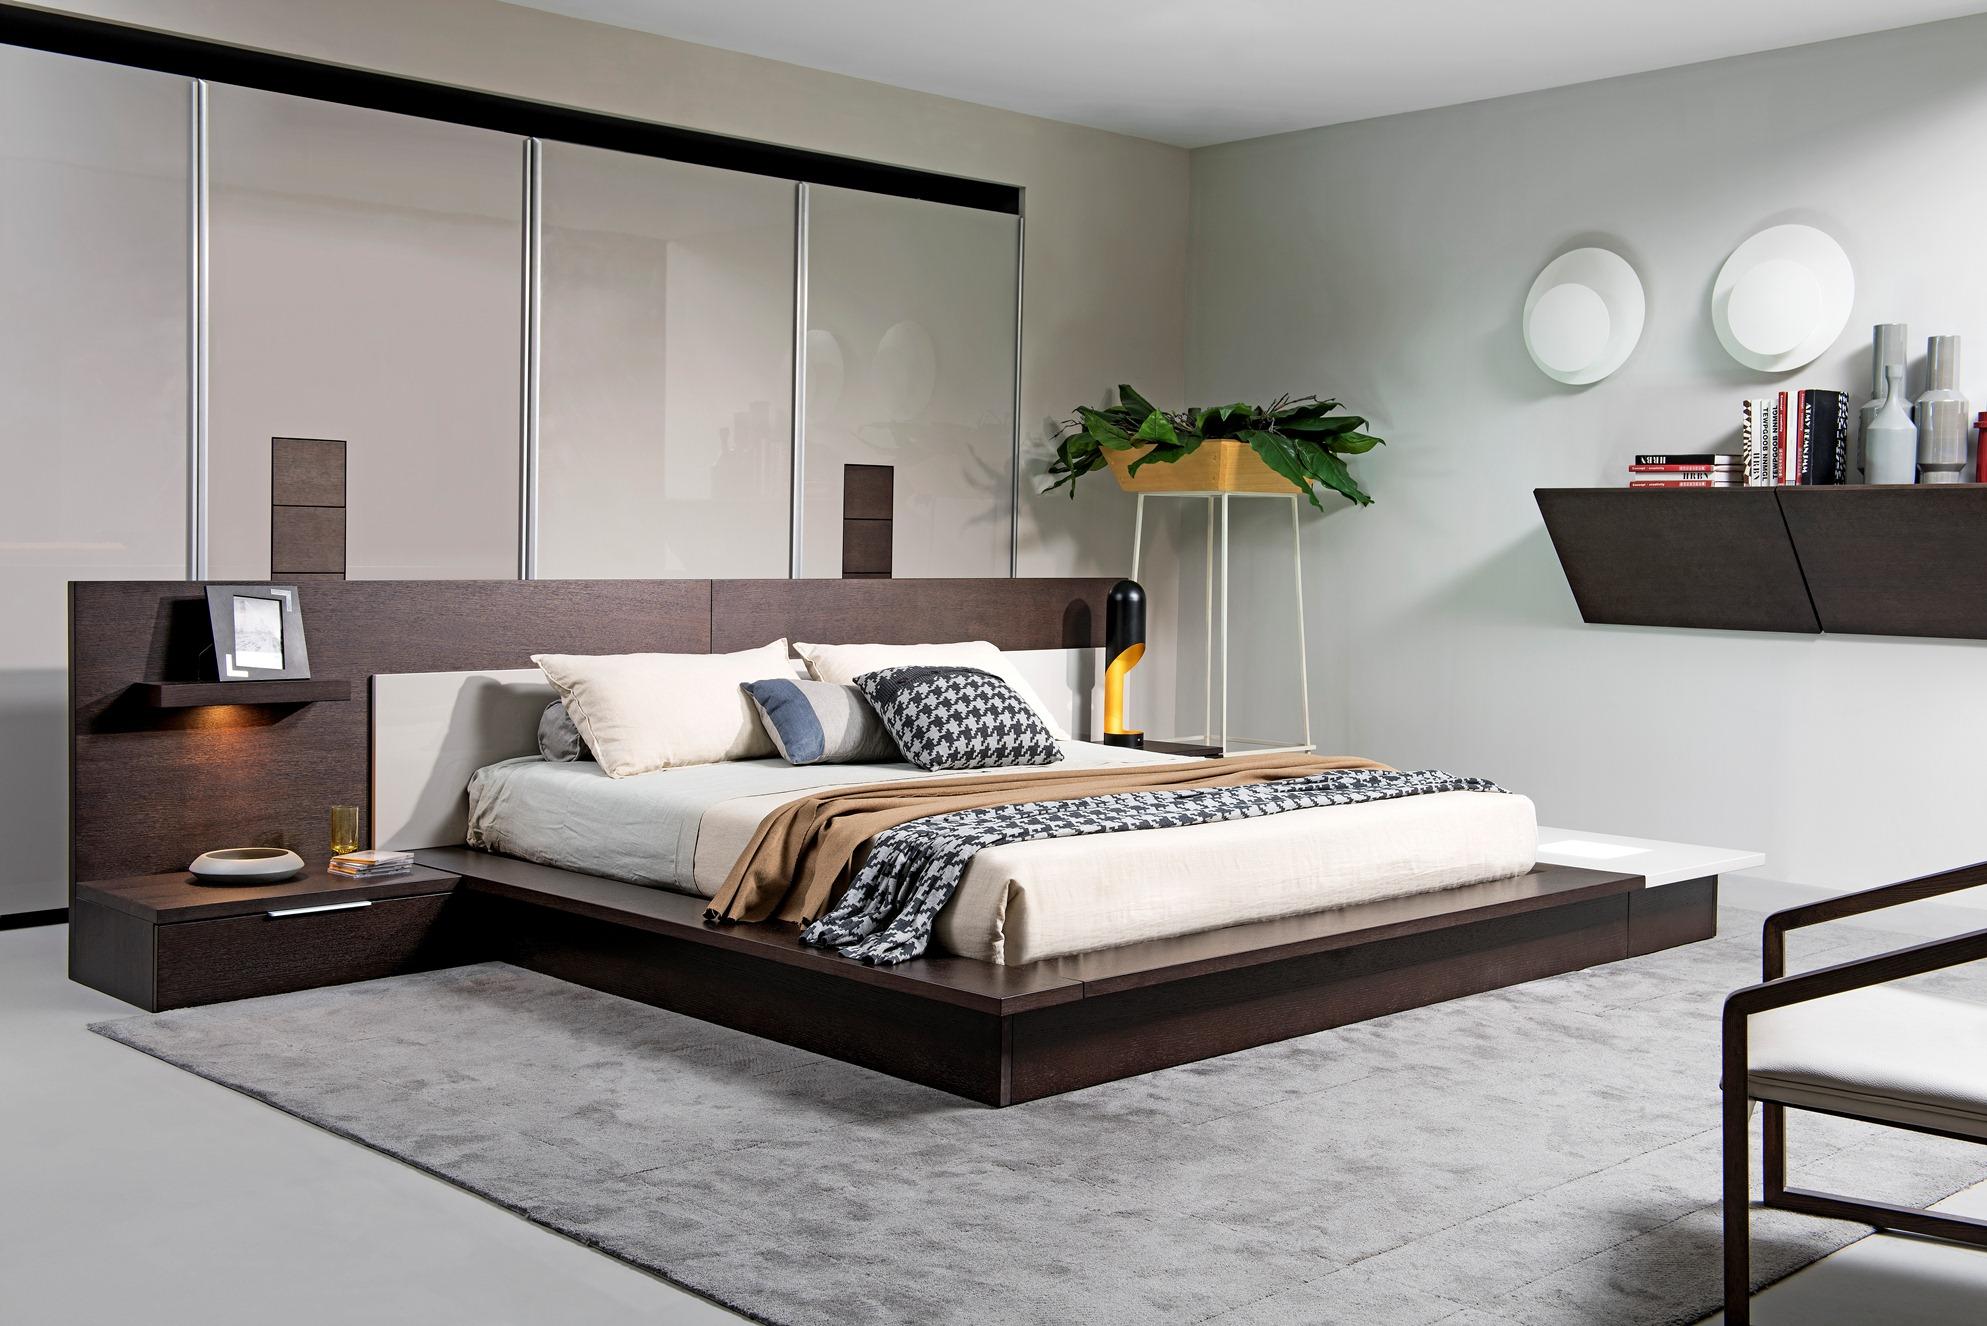 

    
Soflex Rochester Modern Brown Oak Grey Platform Queen Bed w/ Lights Built-in Nightstands
